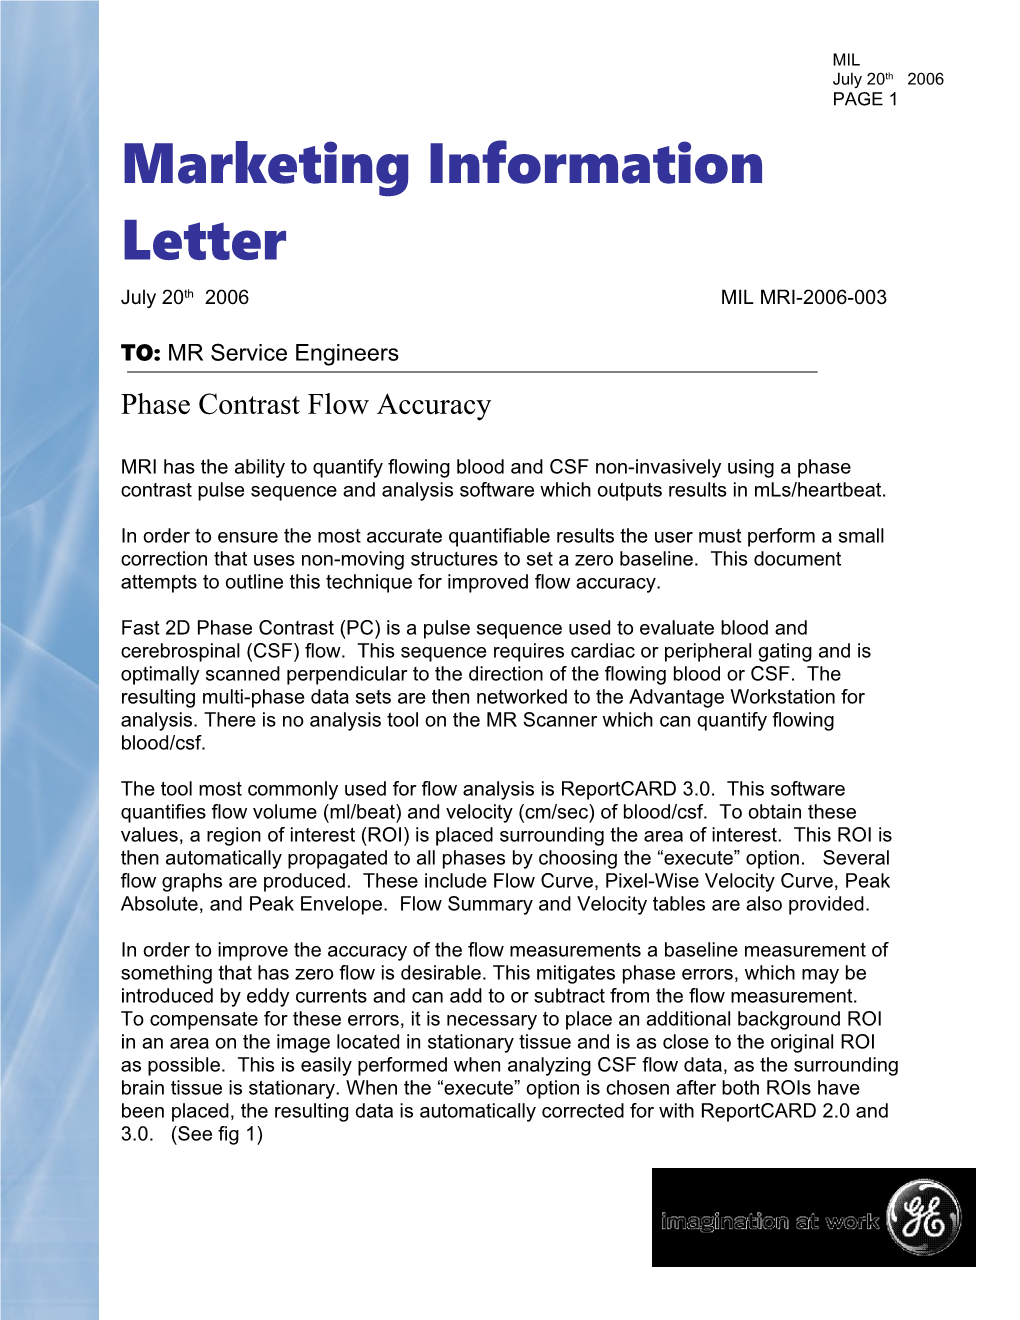 Marketing Information Letter